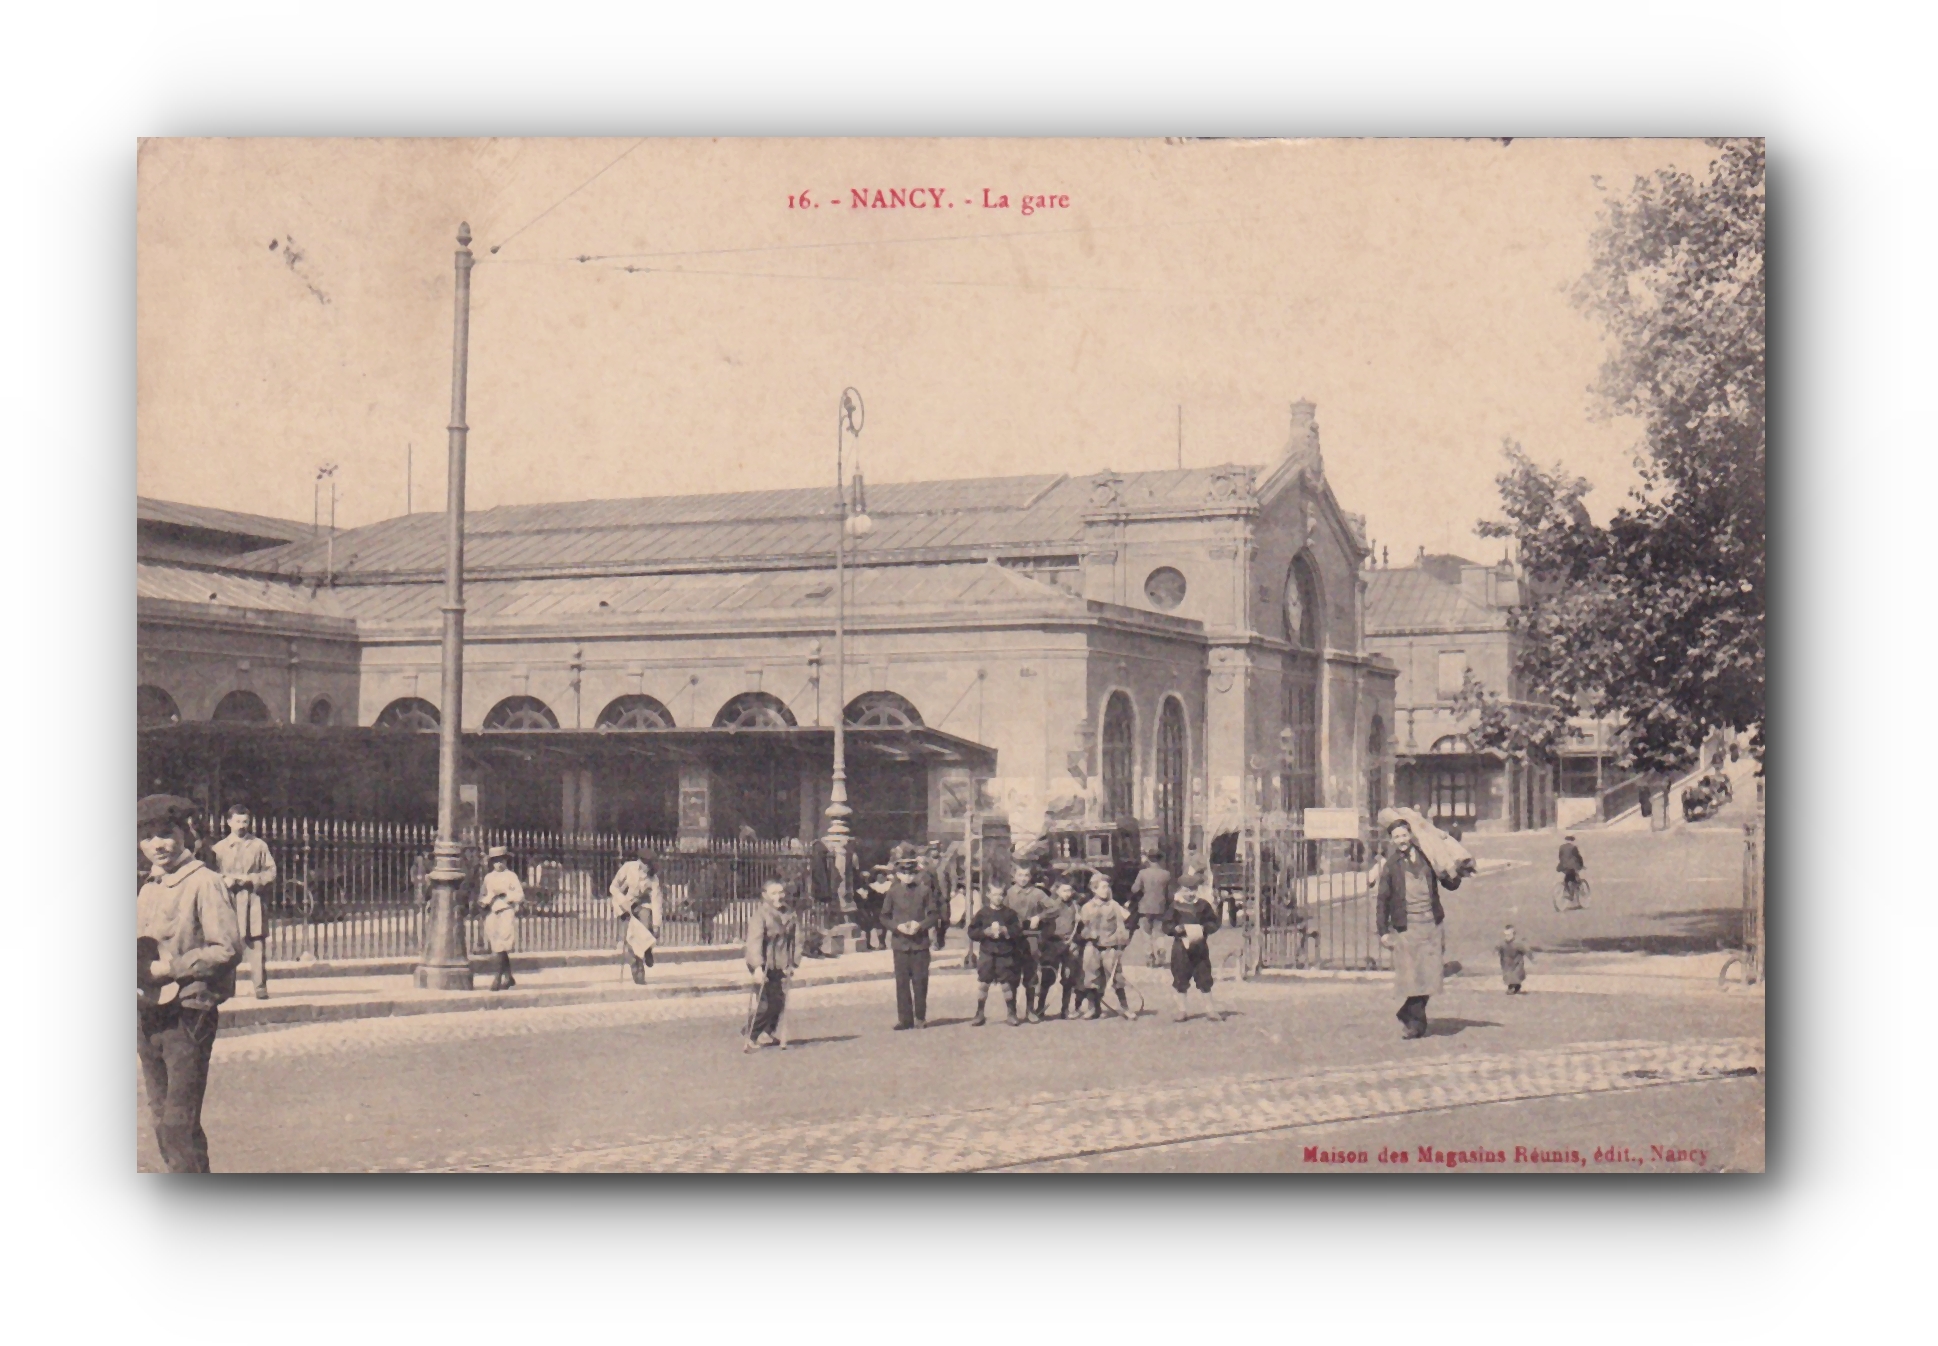 - La gare - NANCY - 19.01.1908 -